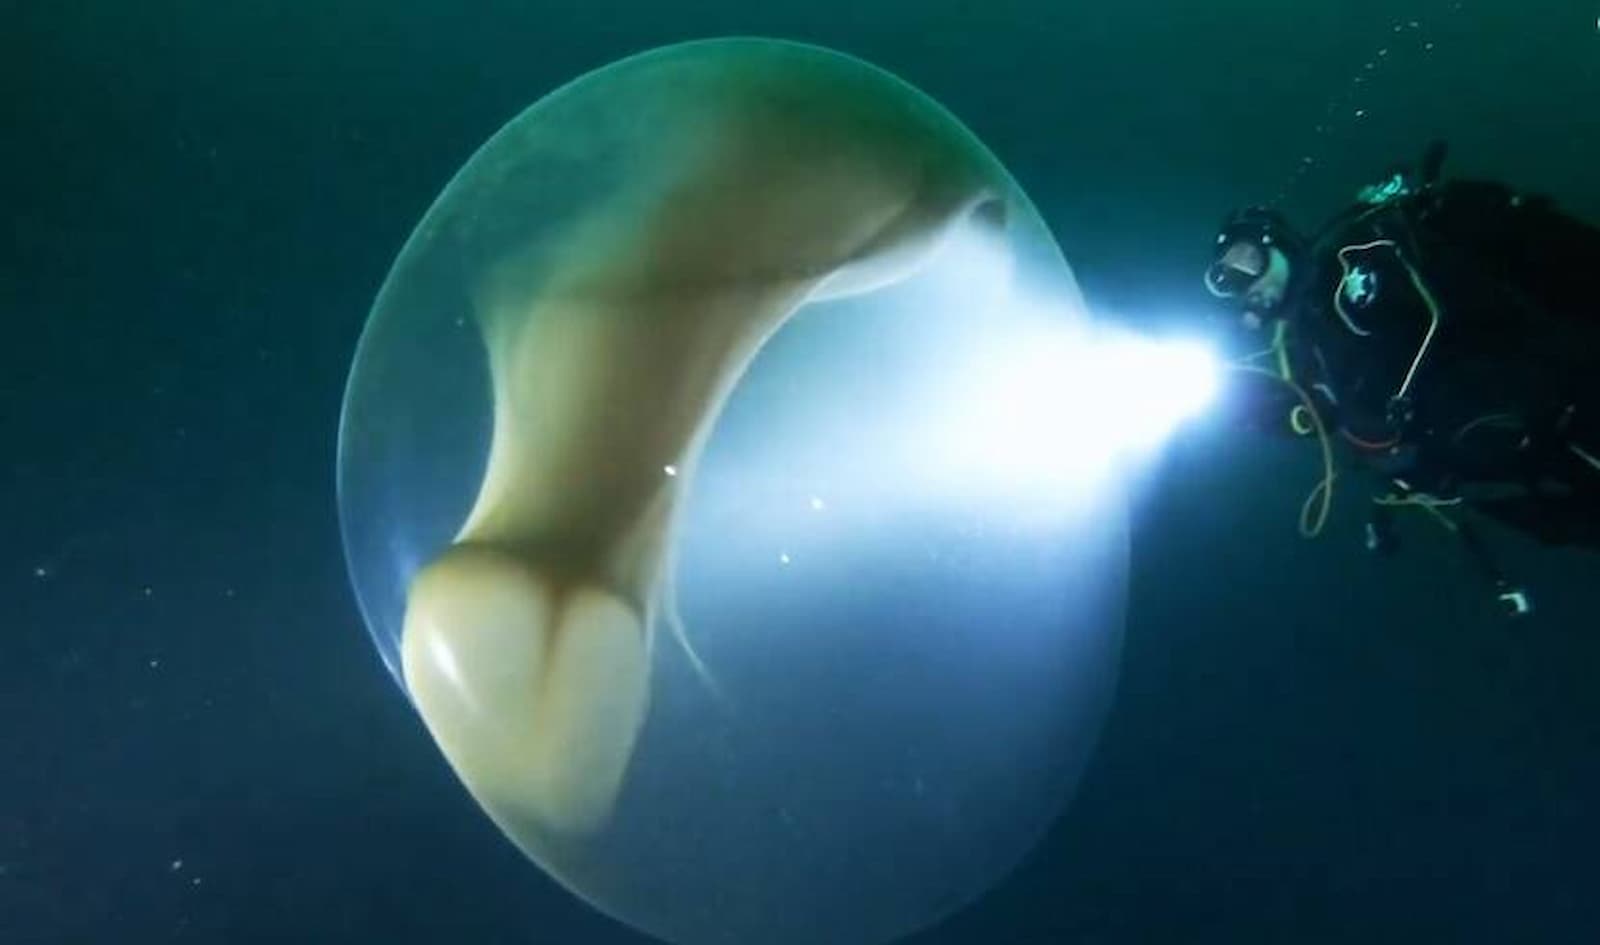 Esfera gelatinosa misteriosa aparece no mar da Noruega